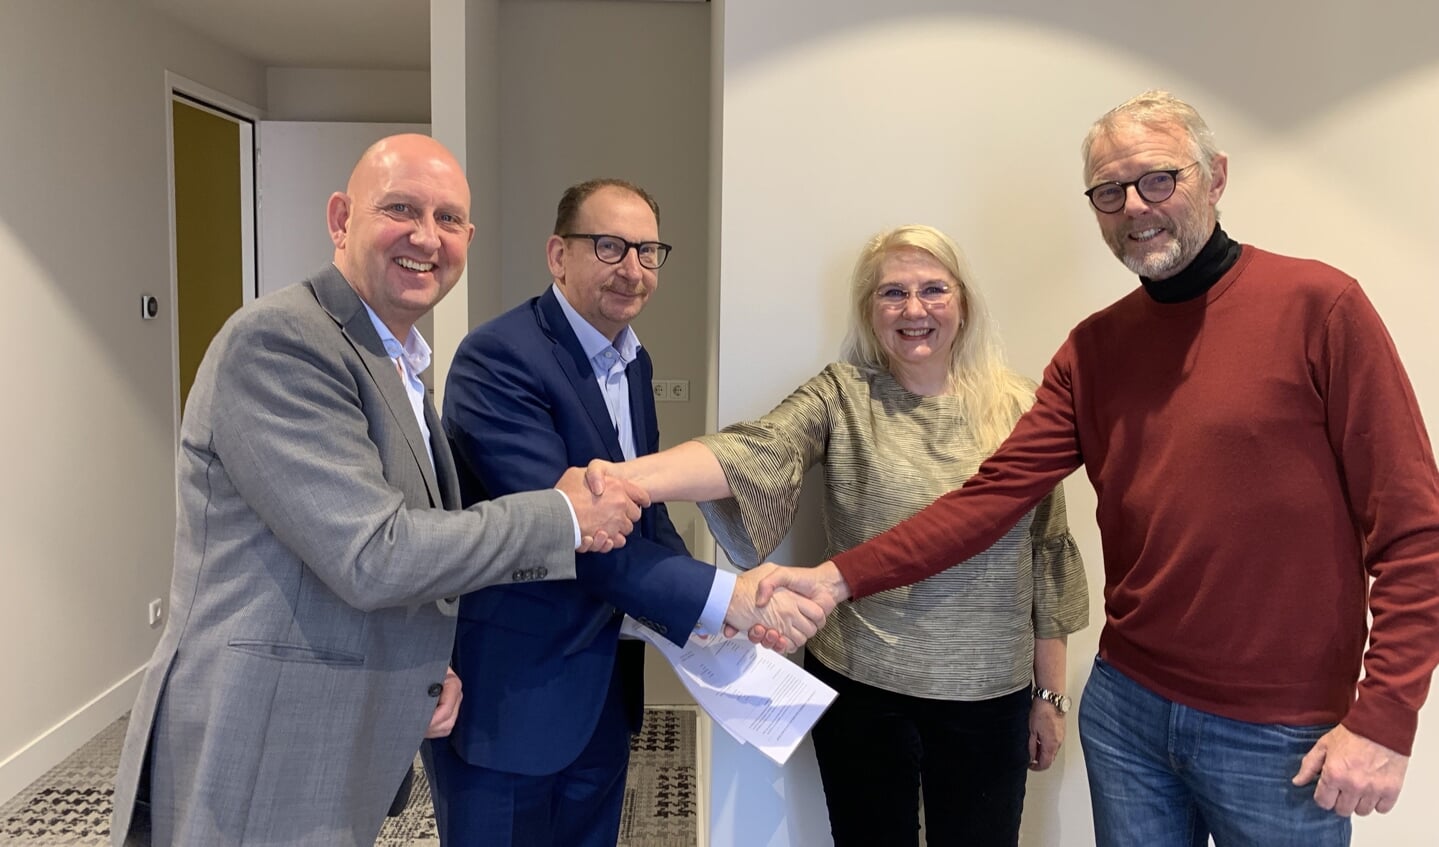 De directeuren/oprichters van PsyMens en de huisartsen van Huisartsenpraktijk Vathorst feliciteren elkaar met de nieuwe samenwerking. 